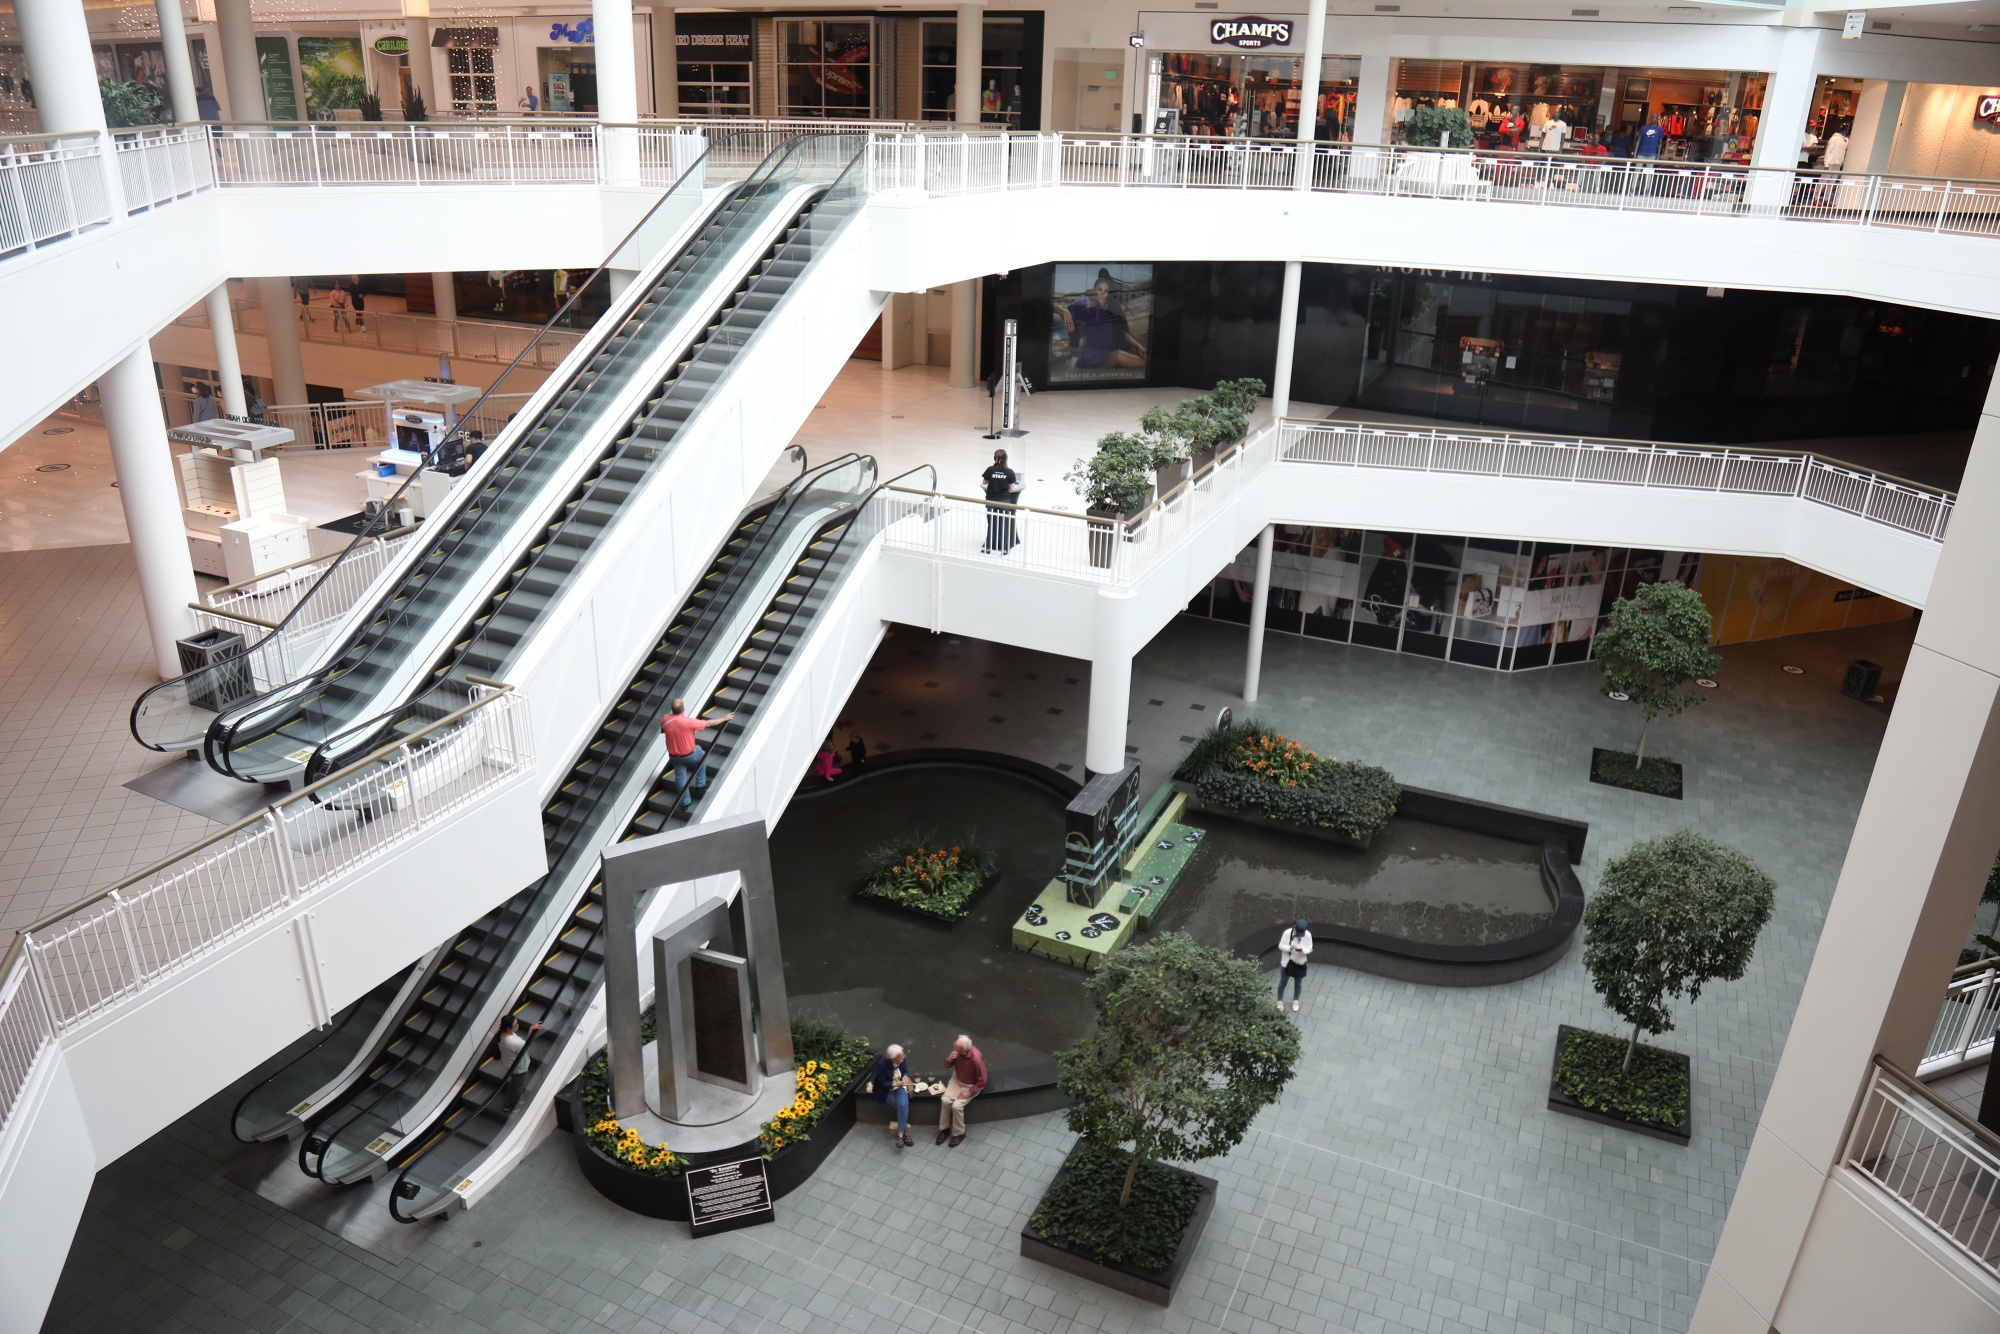 NJ's American Dream Mall saw losses quadruple in 2022